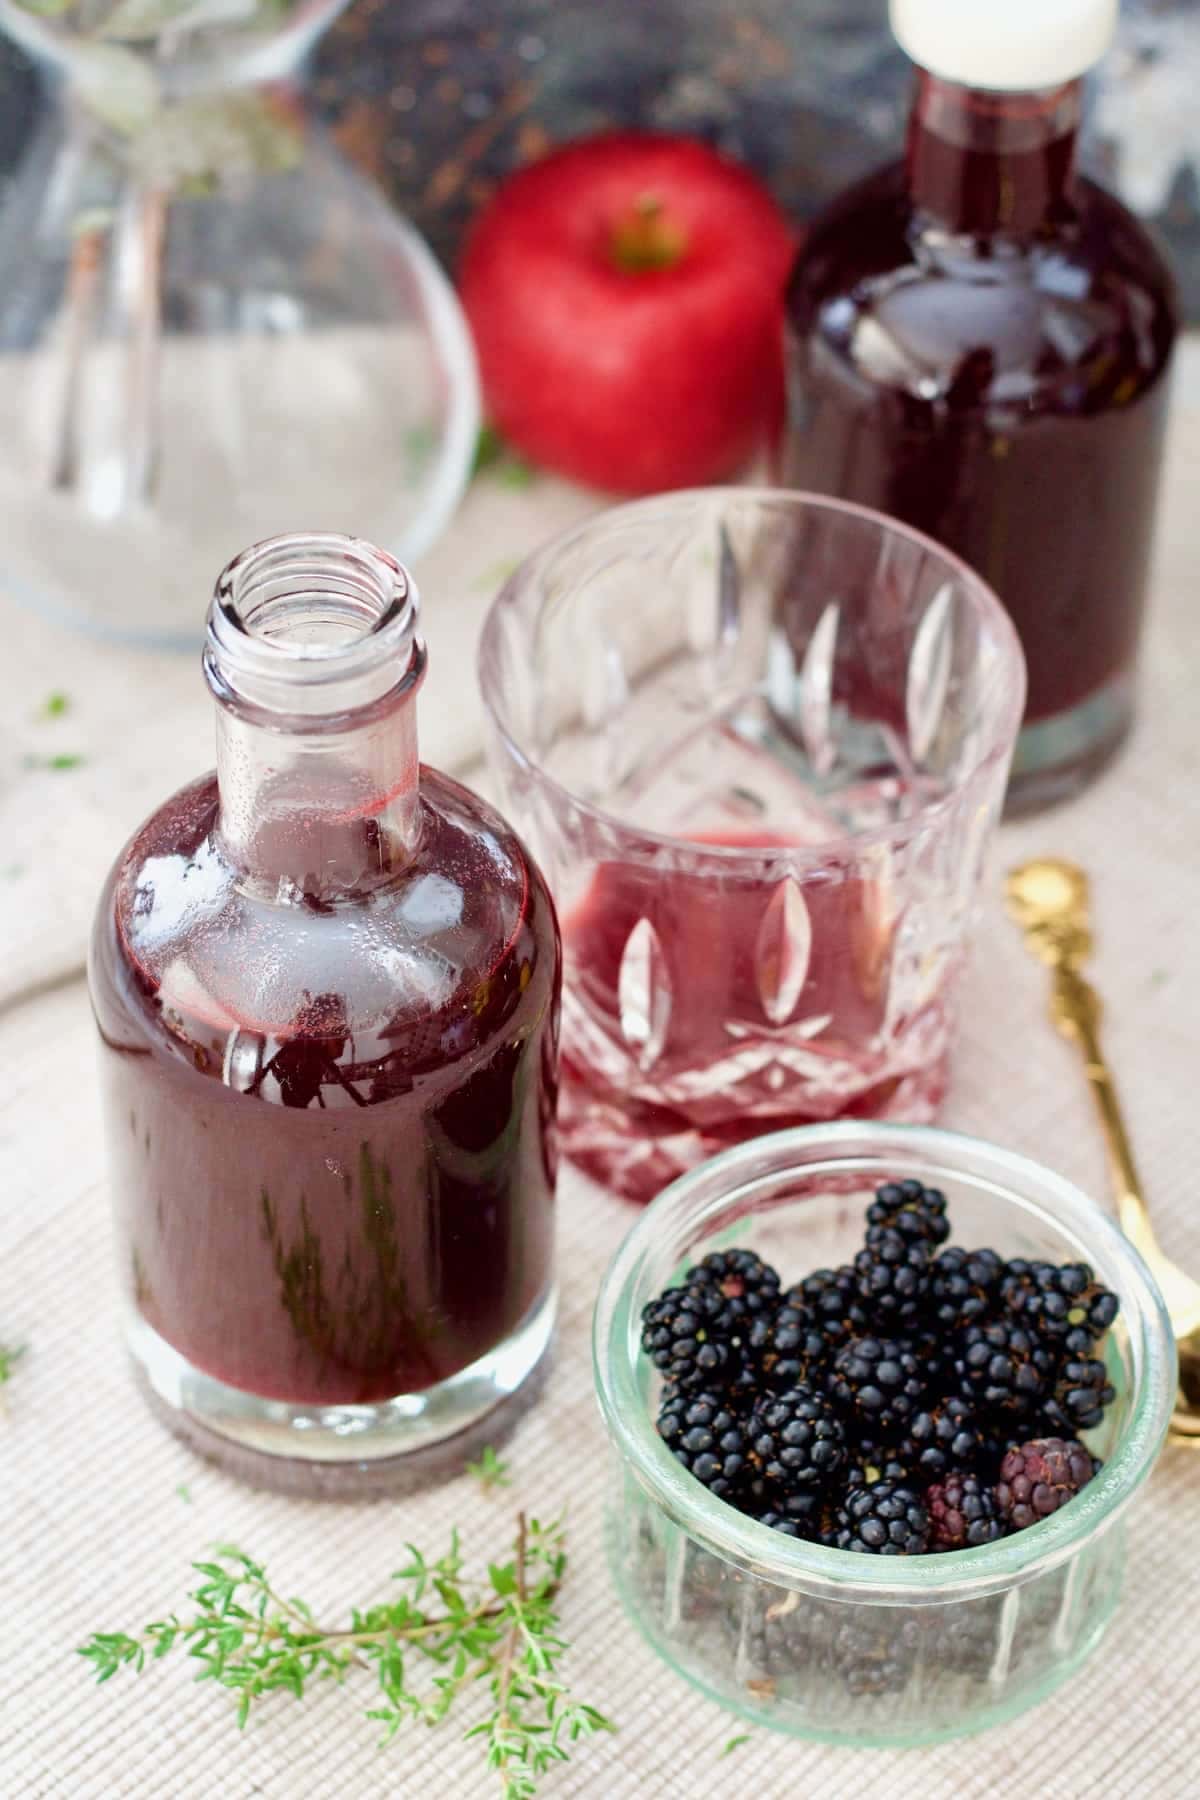 Bottle of blackberry vinegar, tumbler and bowl with blackberries.